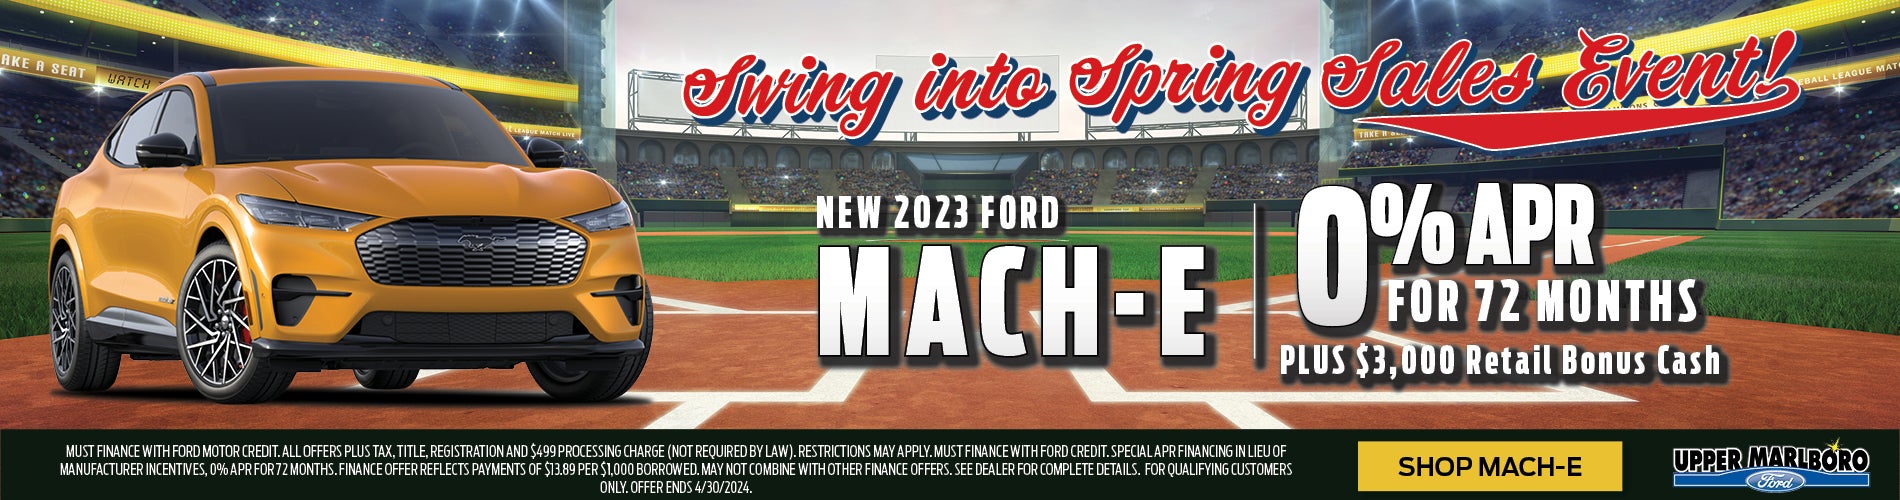 New 2023 Ford Mach-E